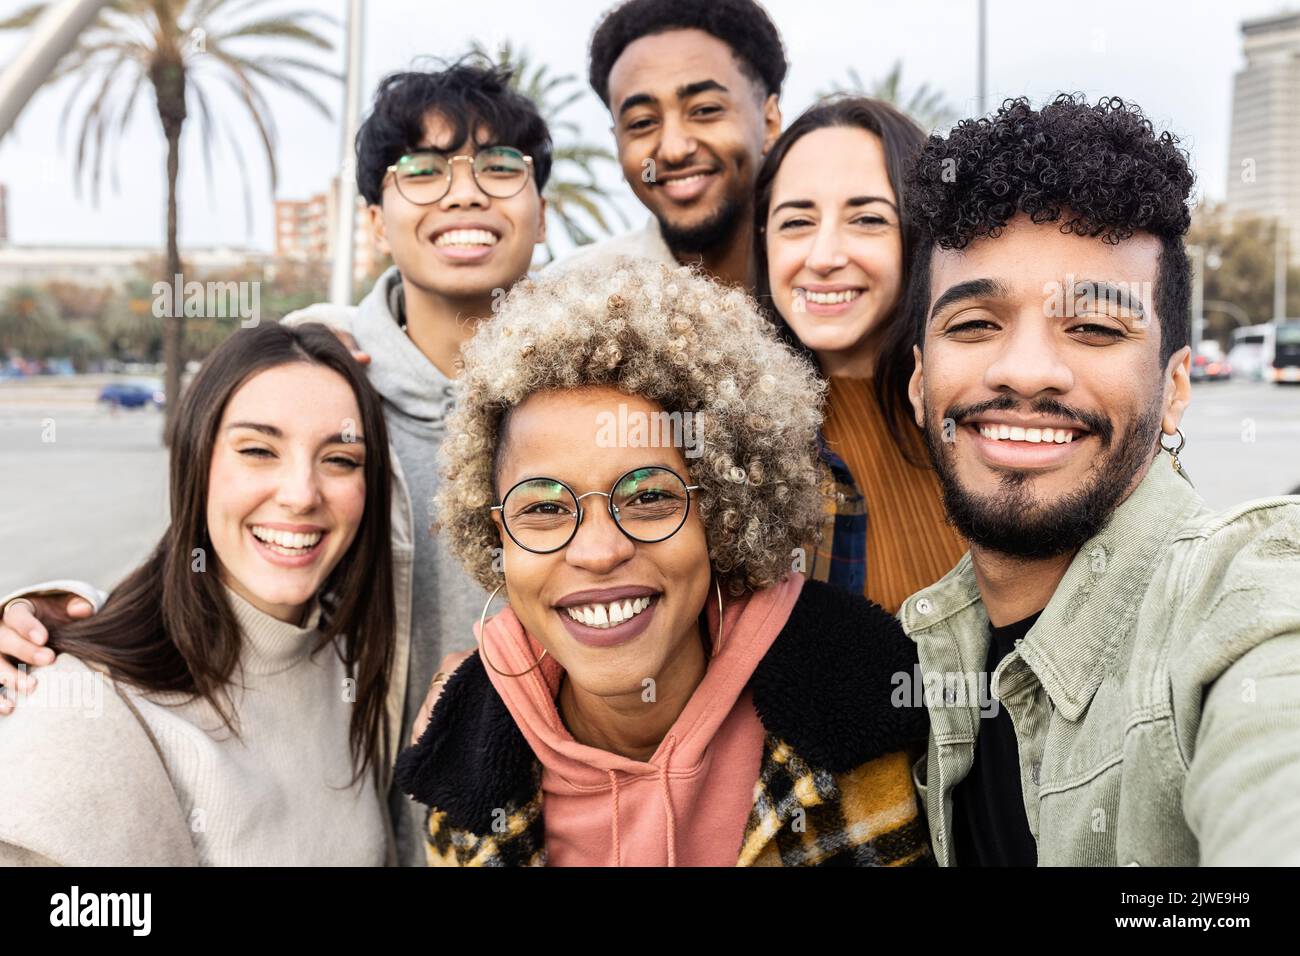 Gruppo multirazziale di giovani amici che prendono il selfie ritratto insieme all'aperto Foto Stock